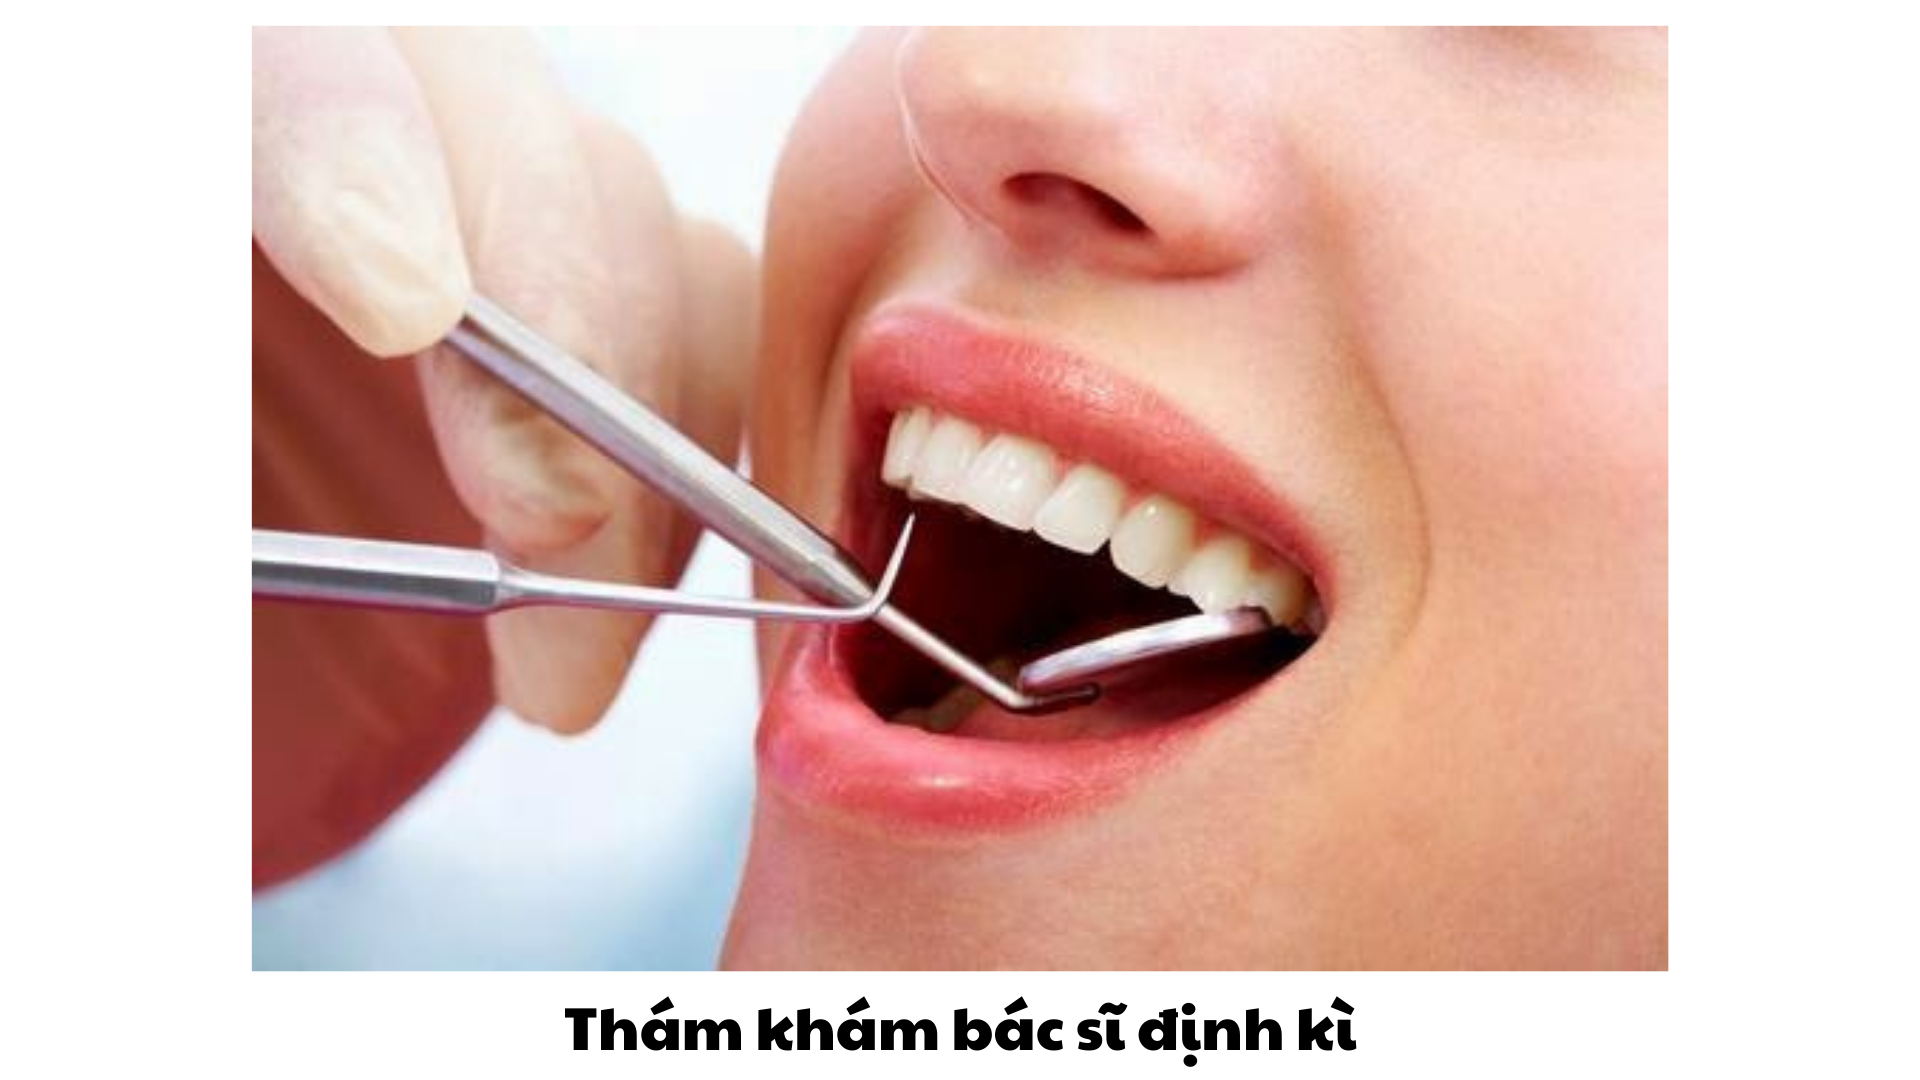 Thăm khám bác sĩ định kỳ là cần thiết để hạn chế các vấn đề về răng miệng